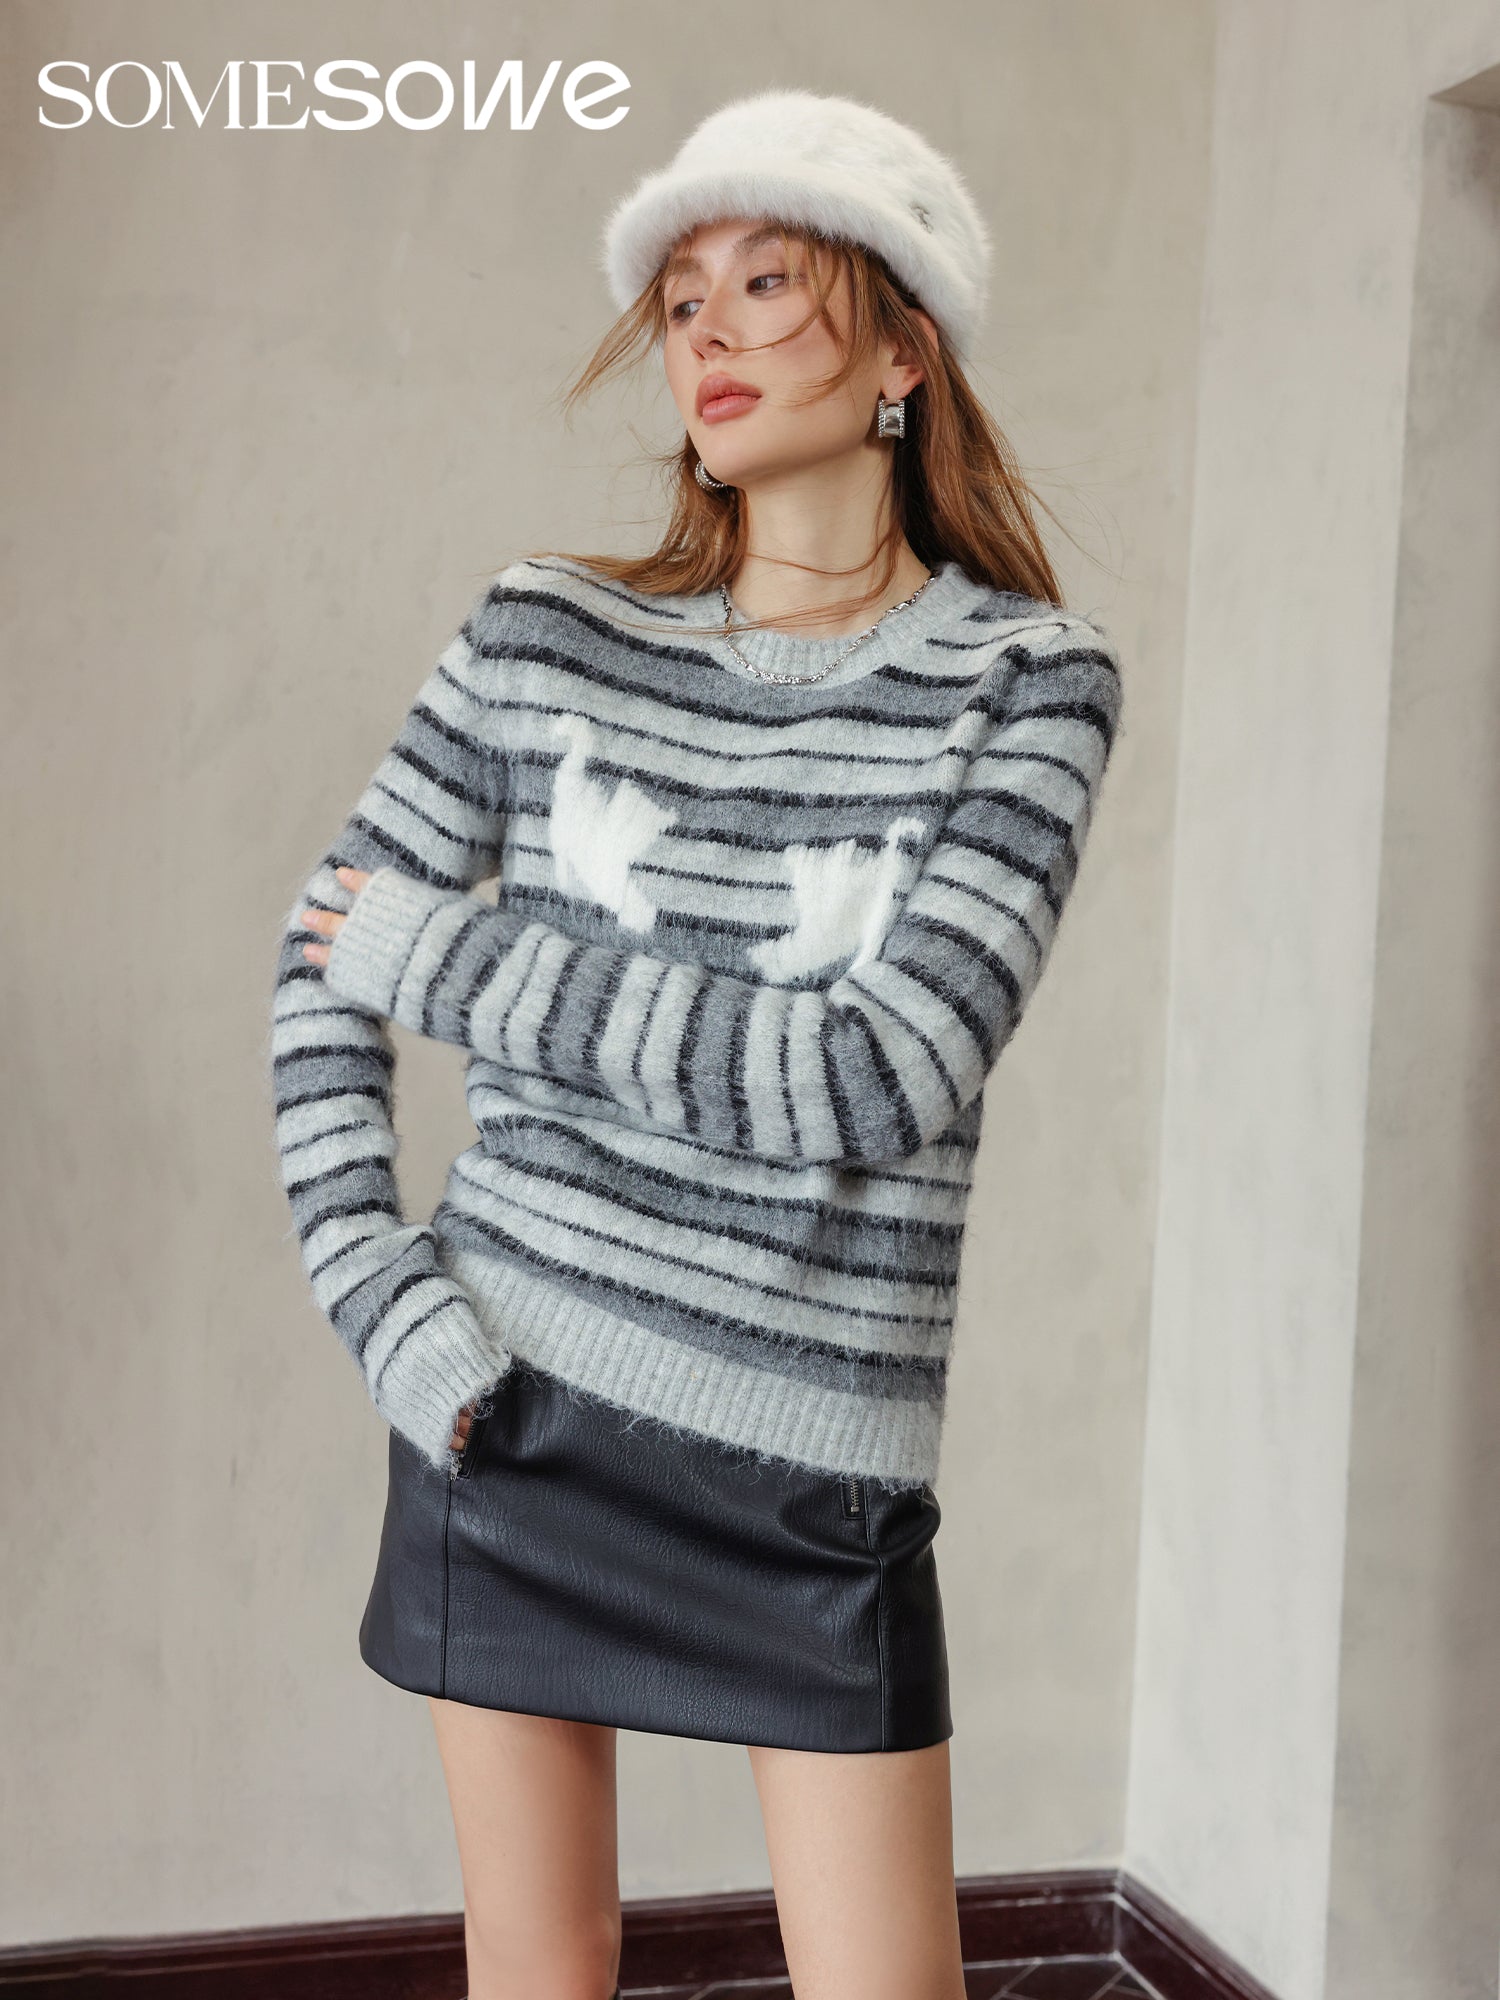 SOMESOWE Stripe Kitty Round Neck Sweater | MADA IN CHINA